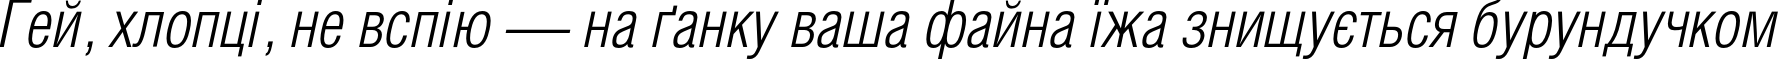 Пример написания шрифтом HeliosCondLight Italic текста на украинском